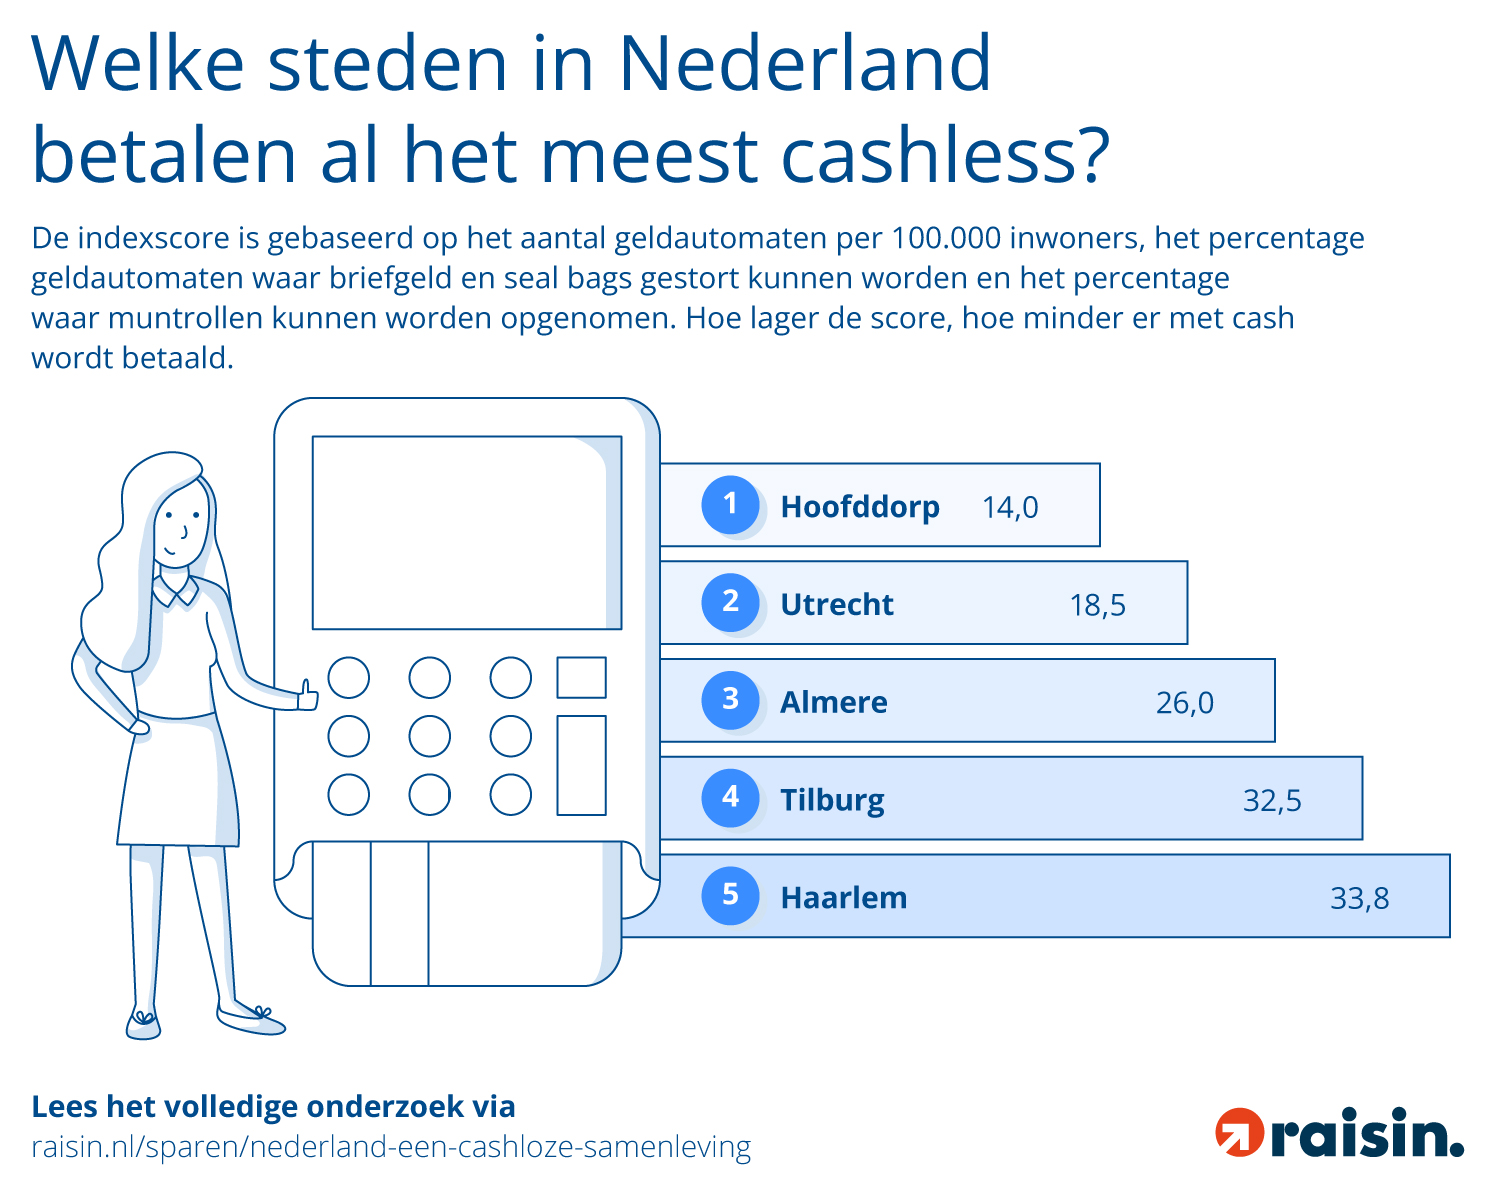 Welke steden betalen het meest cashloos. Bron: Raisin.nl